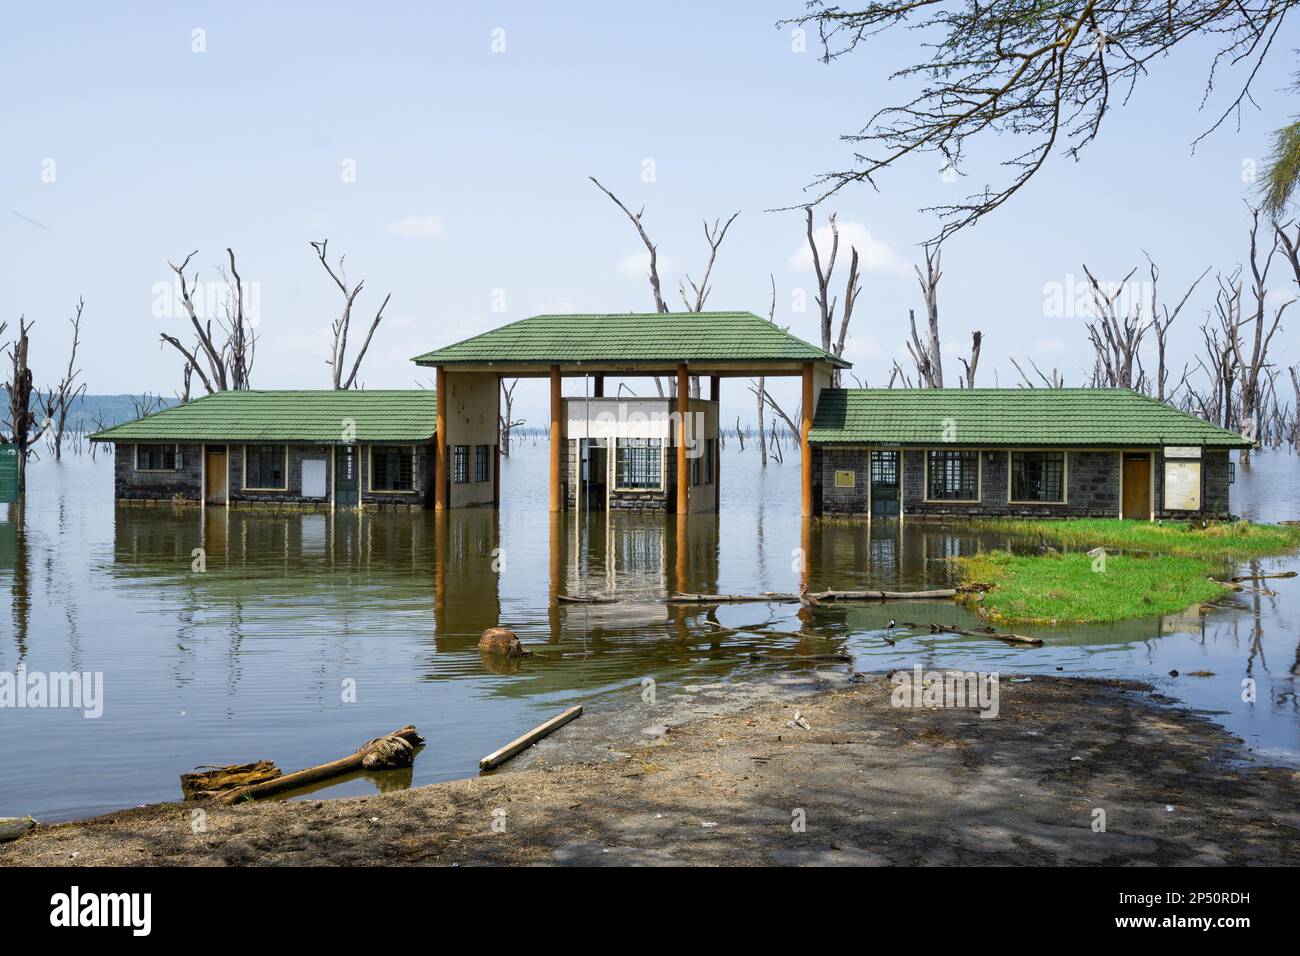 Bellissimo paesaggio del lago nakuru con il vecchio ingresso sotto l'acqua e specchio nel lago circondato da alberi morti e verde gras in kenya Foto Stock